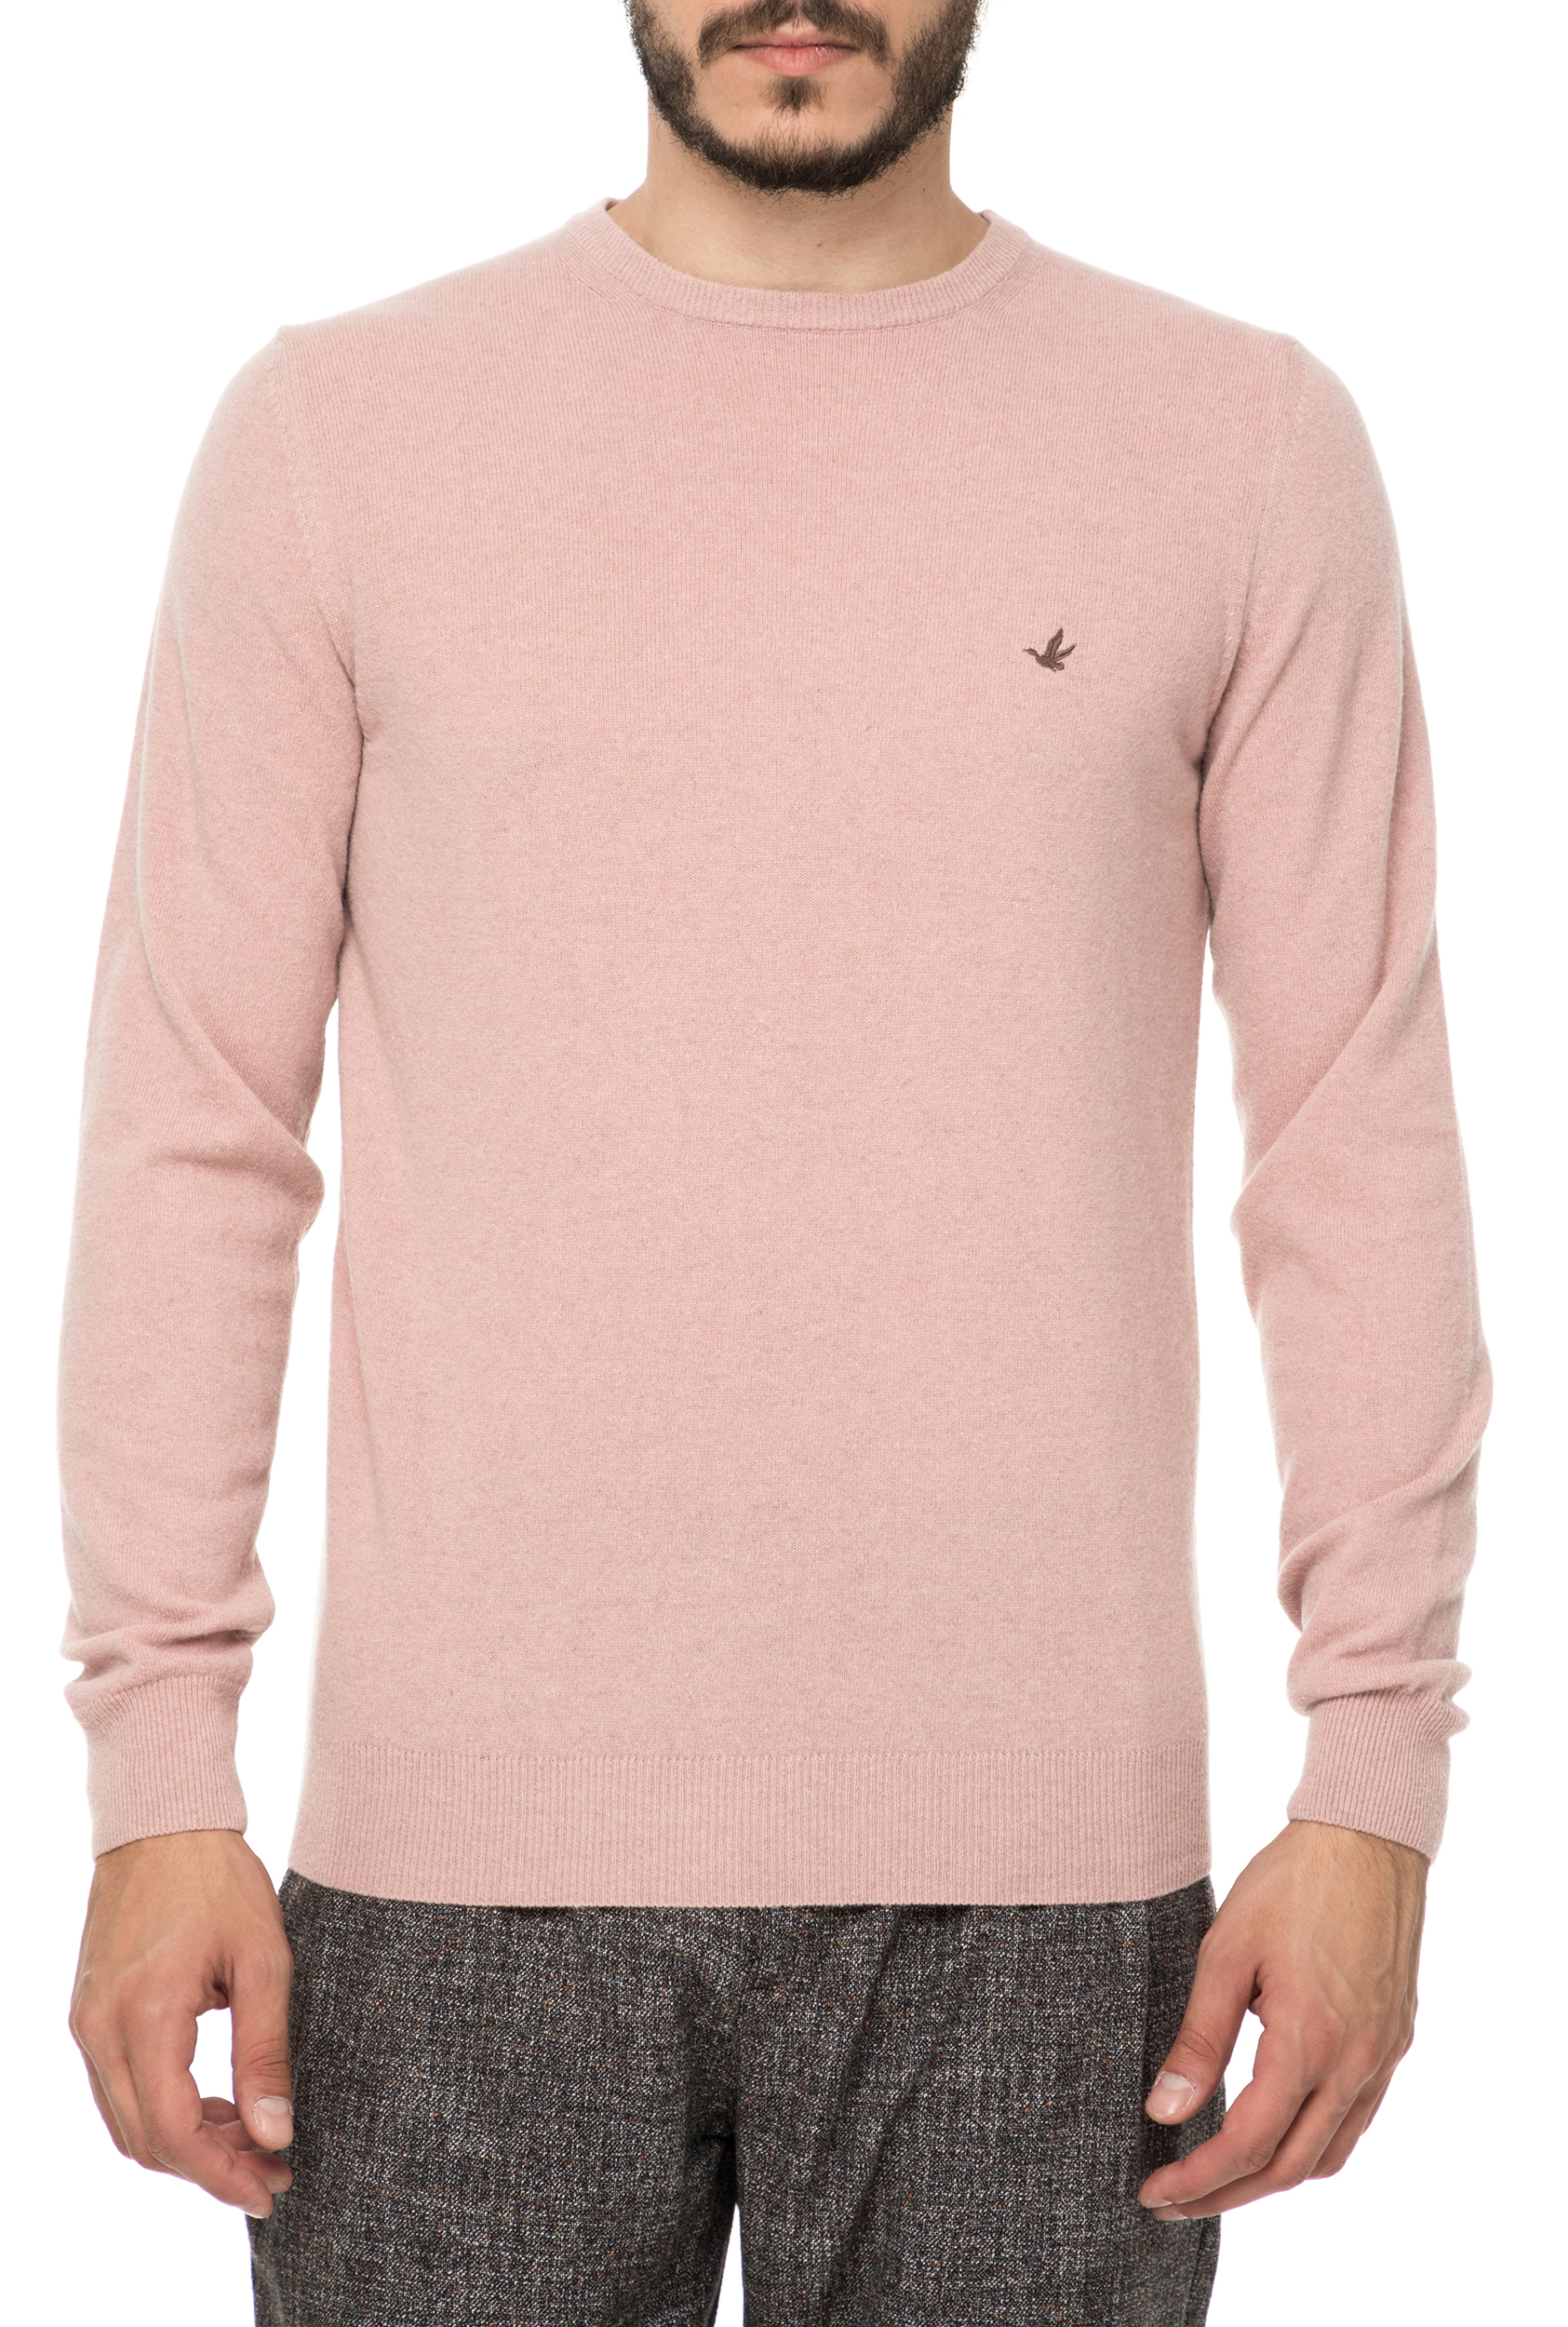 Ανδρικά/Ρούχα/Πλεκτά-Ζακέτες/Πουλόβερ BROOKSFIELD - Ανδρική πλεκτή μπλούζα BROOKSFIELD ροζ